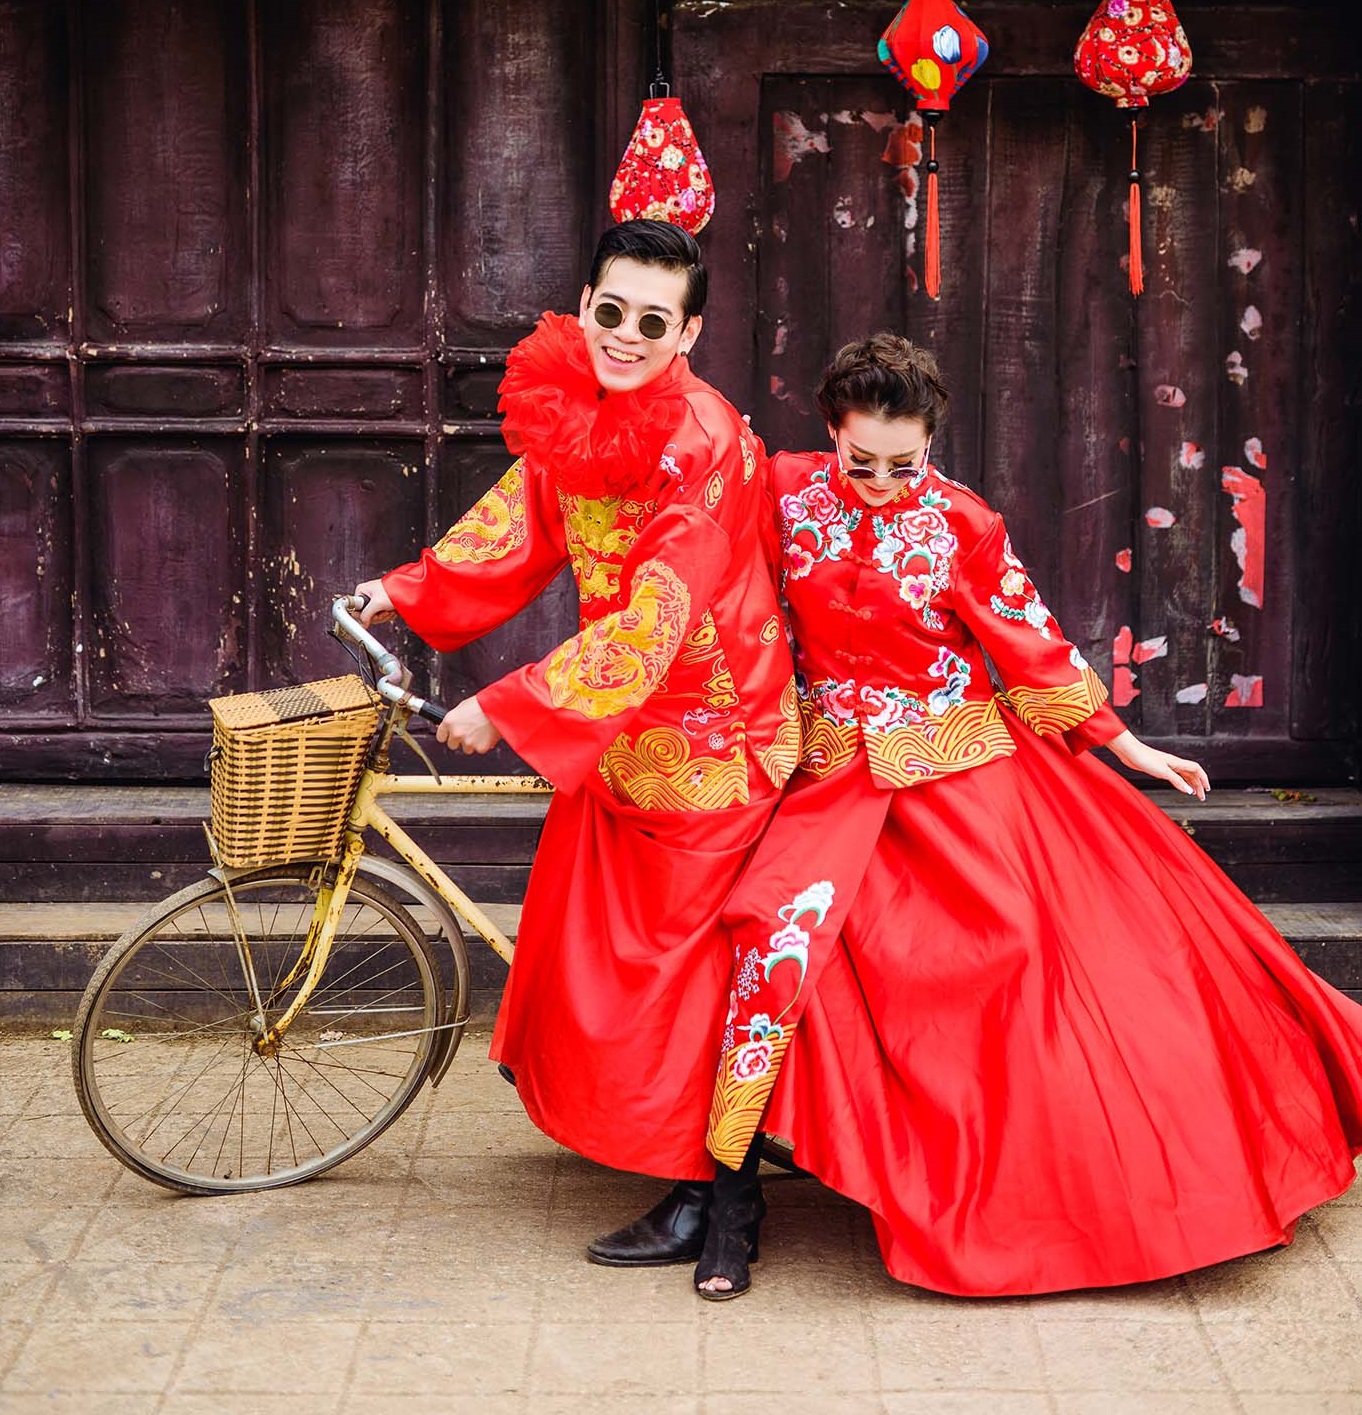 Nếu bạn muốn có những bức ảnh cưới lãng mạn, huyền thoại và xuất sắc trong bối cảnh Trung Quốc hoàng kim, bạn đến đúng nơi rồi đấy! Chụp ảnh cưới Trung Quốc không chỉ là cách để tạo ra những kỷ niệm đáng nhớ, mà còn mang lại cho bạn cơ hội khám phá vẻ đẹp nền văn hóa phát triển tuyệt vời của Trung Quốc.